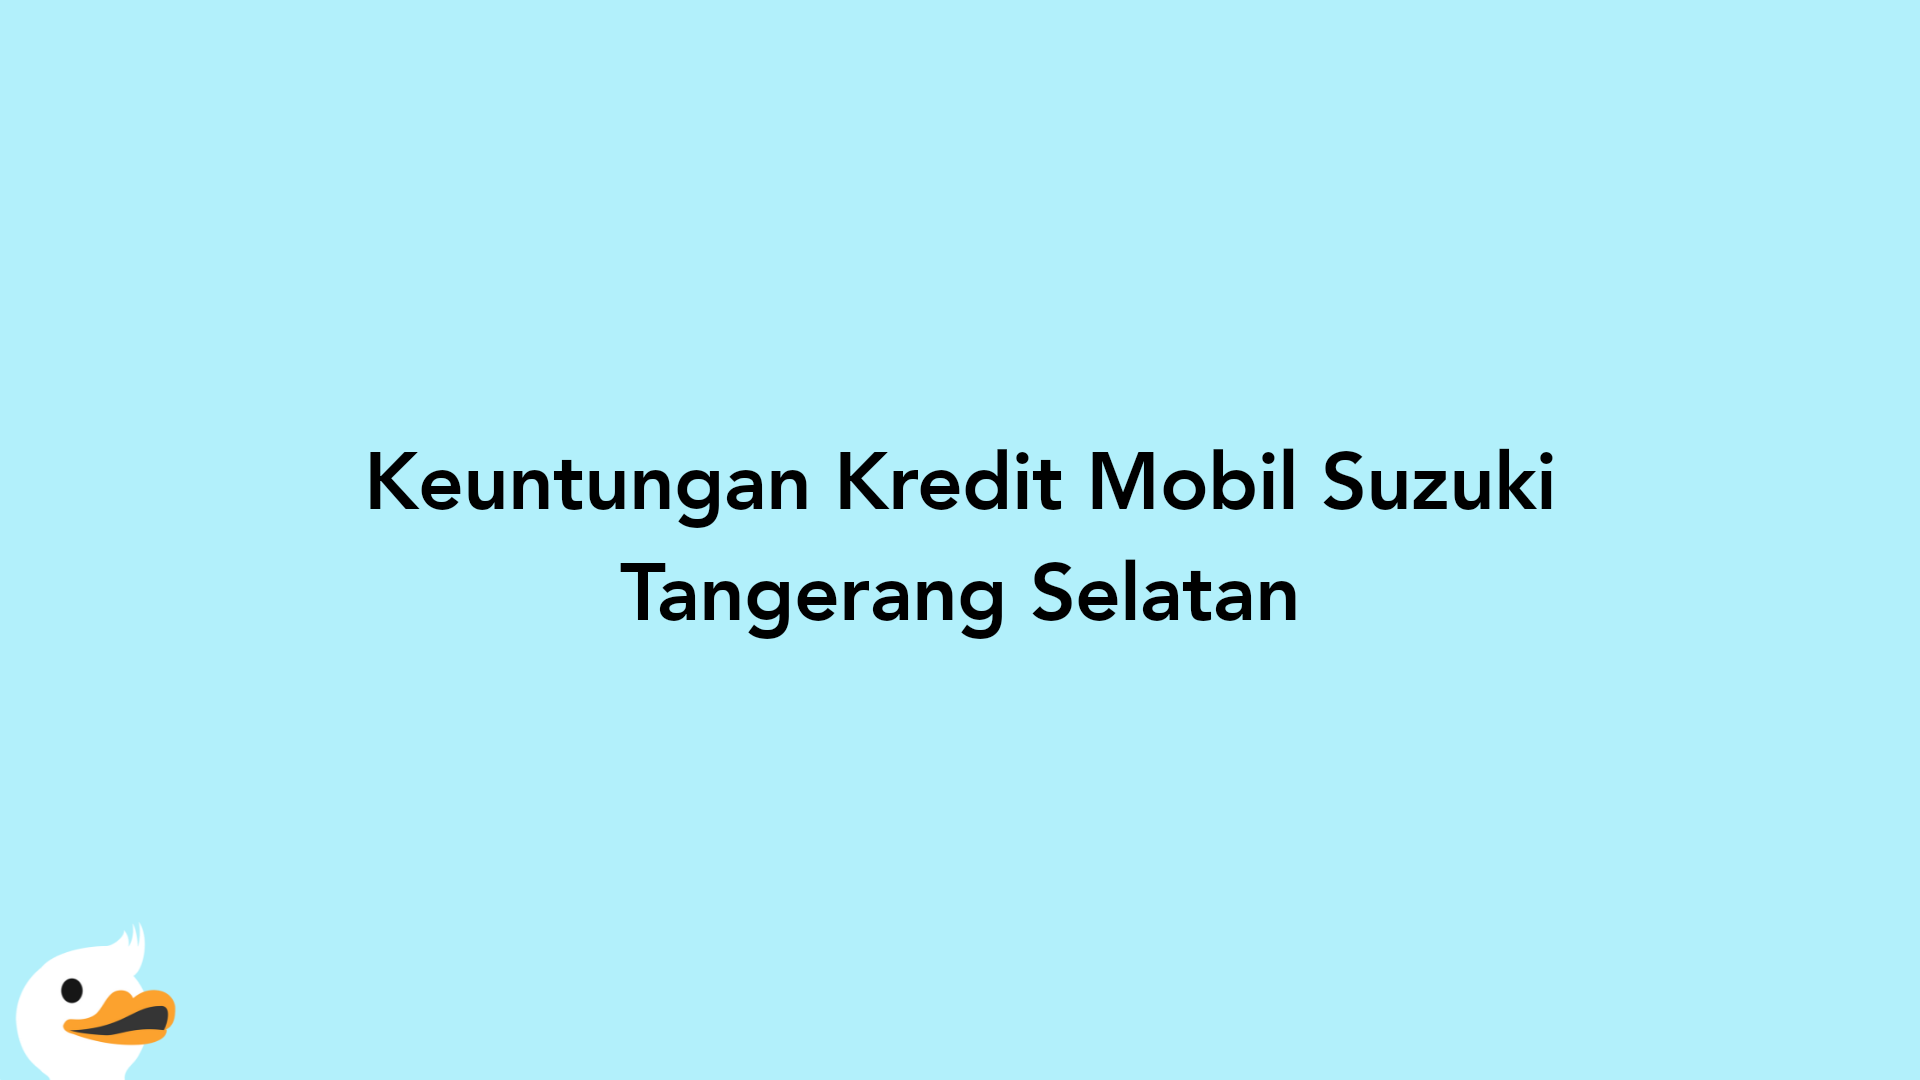 Keuntungan Kredit Mobil Suzuki Tangerang Selatan